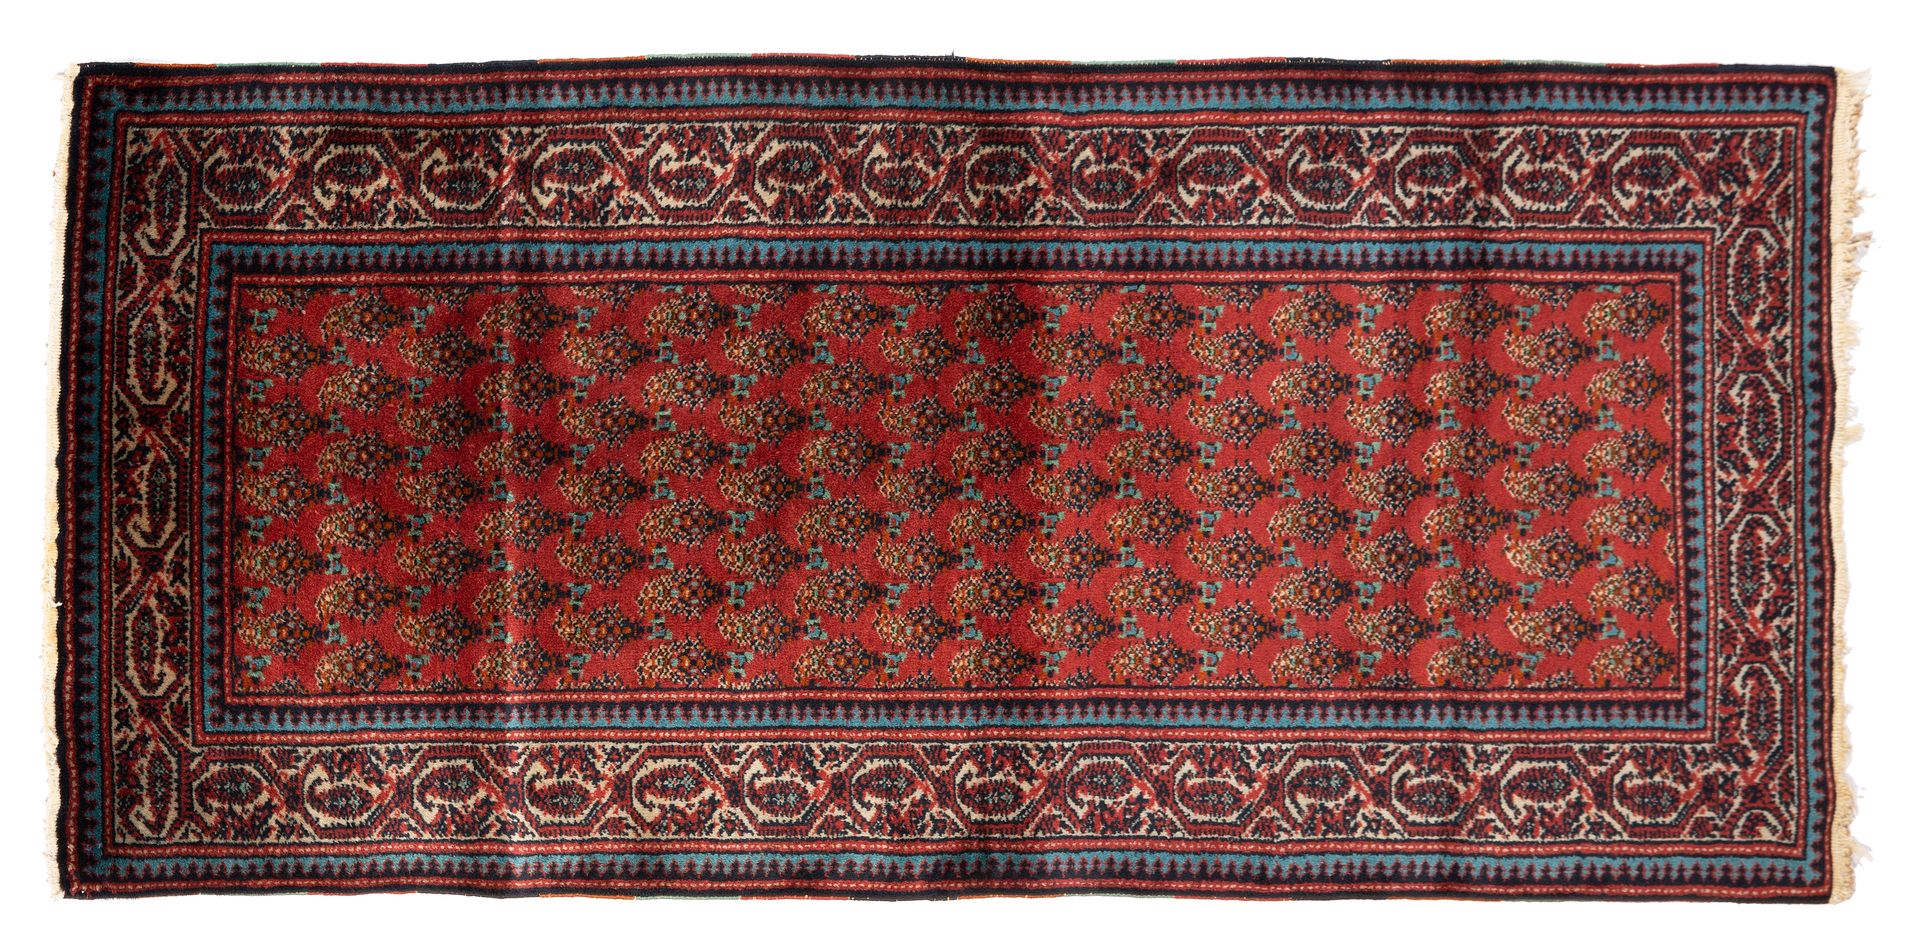 Null 米尔-萨拉本德地毯（伊朗），20世纪中叶至30年代

尺寸：160 x 70厘米。

技术特点：棉质基础上的羊毛丝绒。

一块播种着植物性植物的砖地被&hellip;